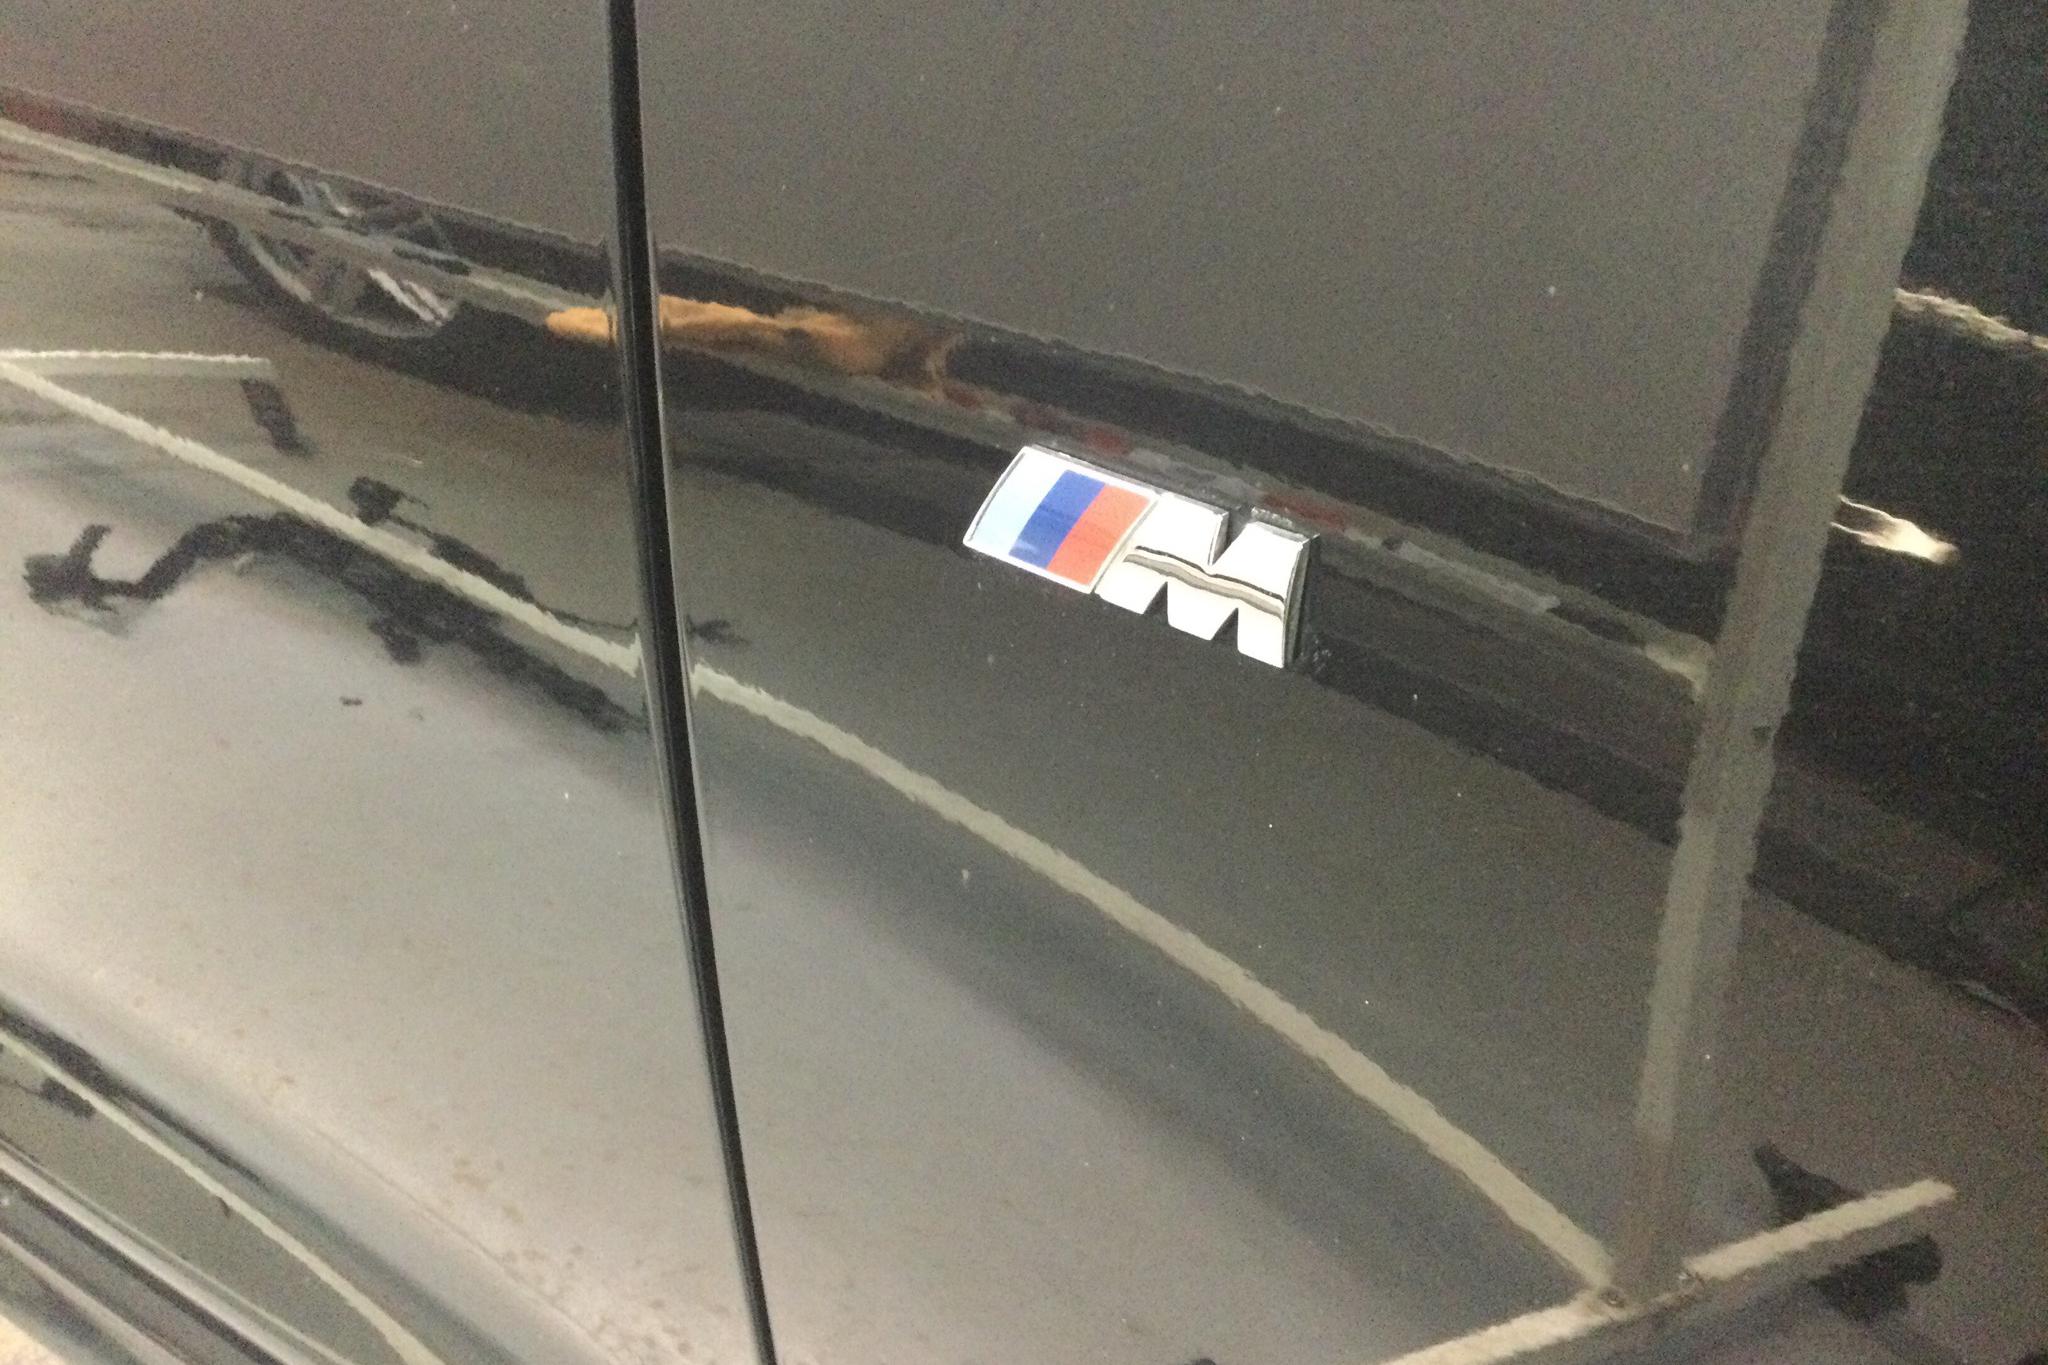 BMW X4 xDrive 20d, F26 (190hk) - 15 775 mil - Automat - svart - 2015